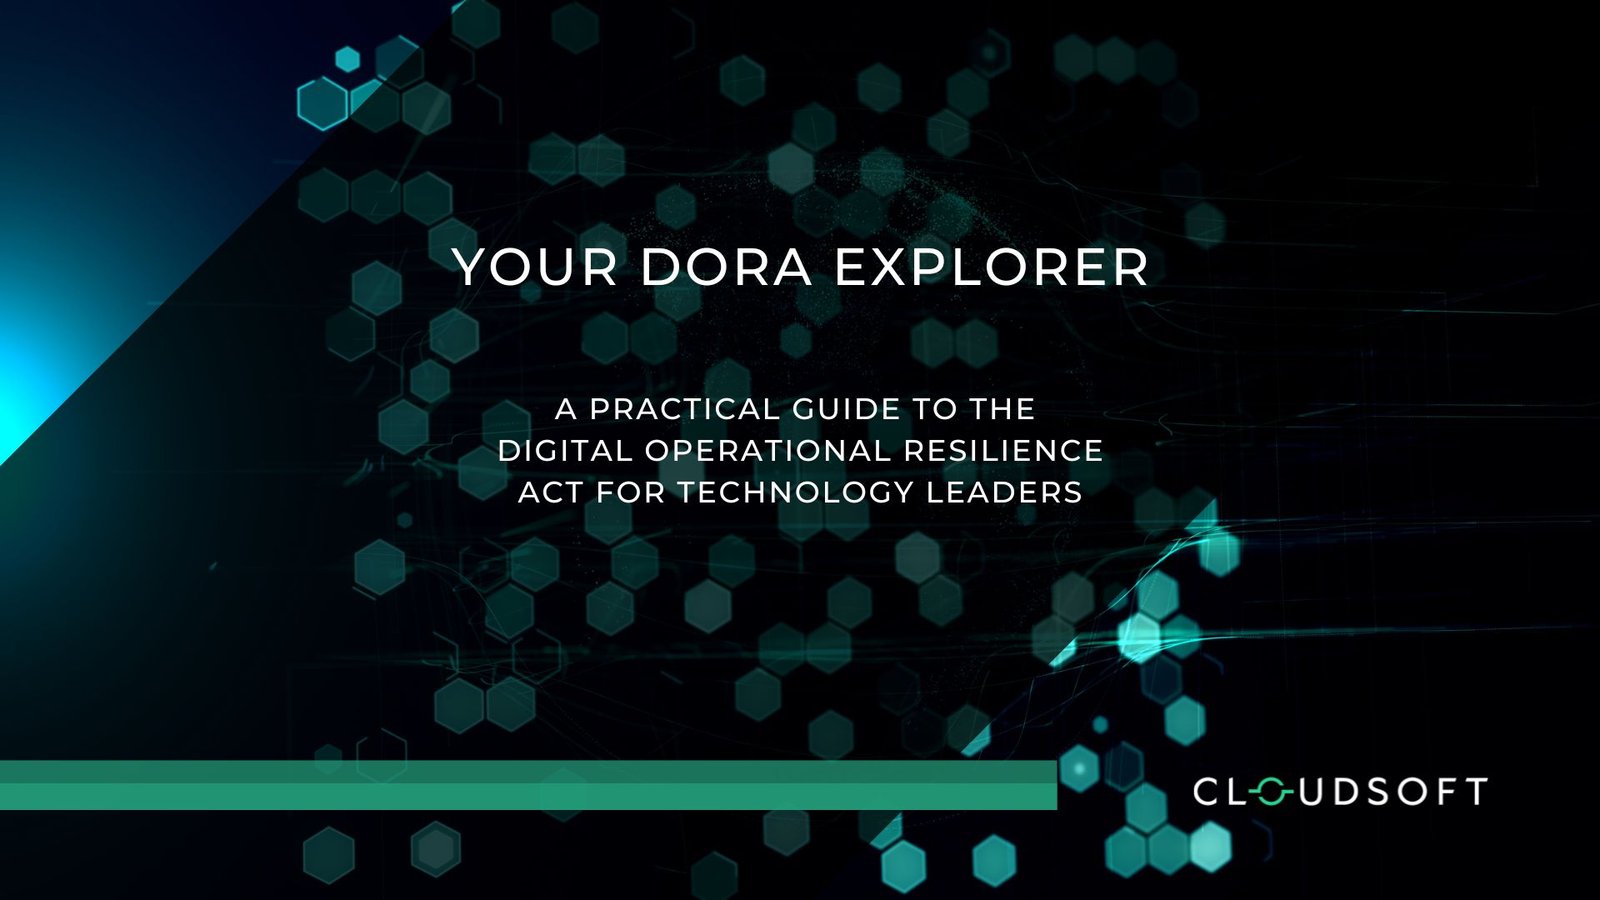 AMP - DORA Explorer - Feature image